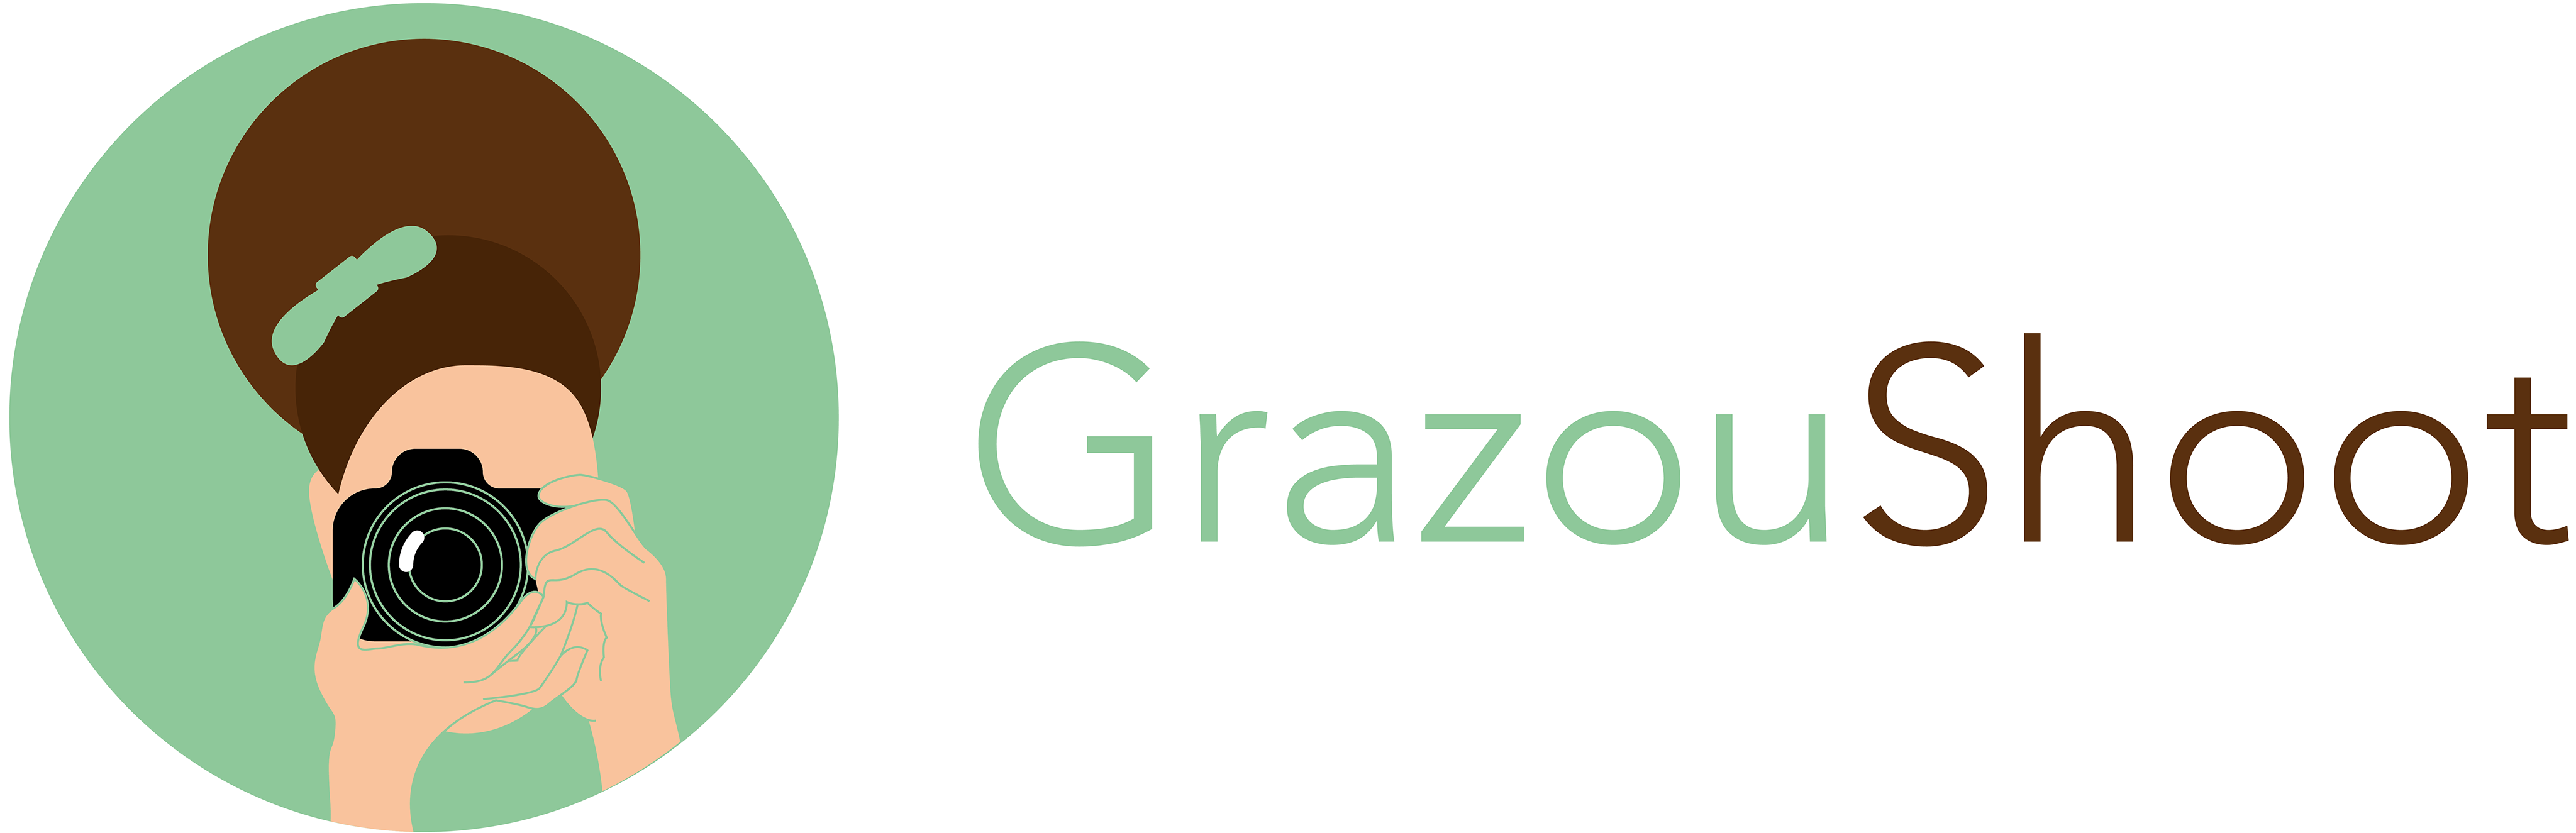 Grazou Shoot